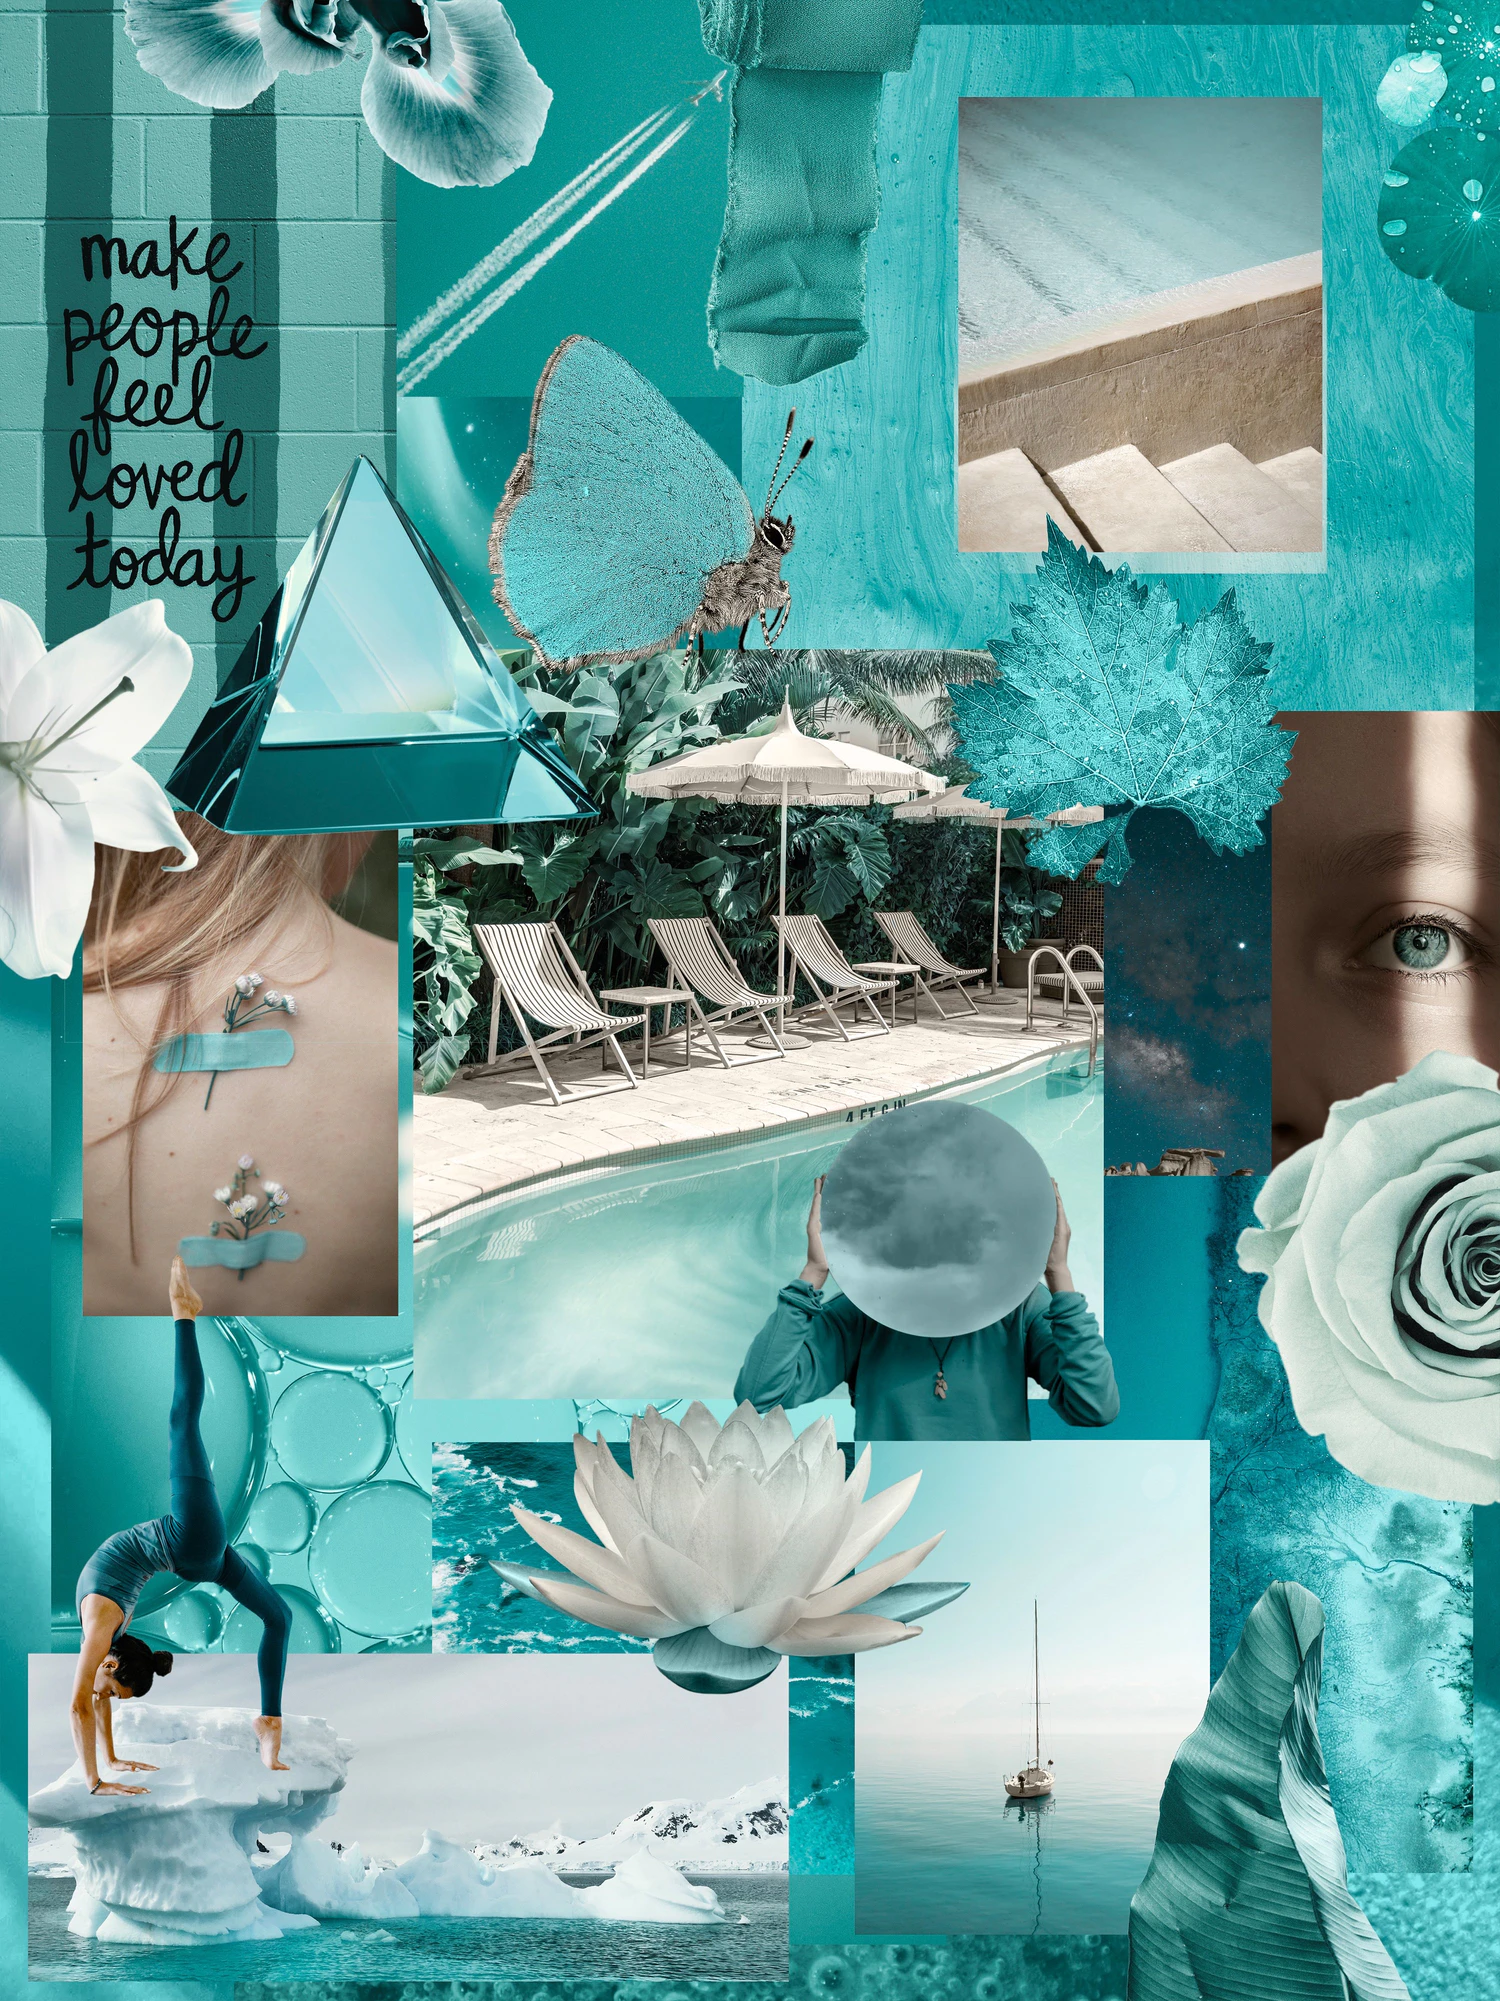 5219 抽象几何彩色图形元素海报封面网页社交媒体包装创意设计PNG透明背景素材 Metamorphosis Collage pack@GOOODME.COM